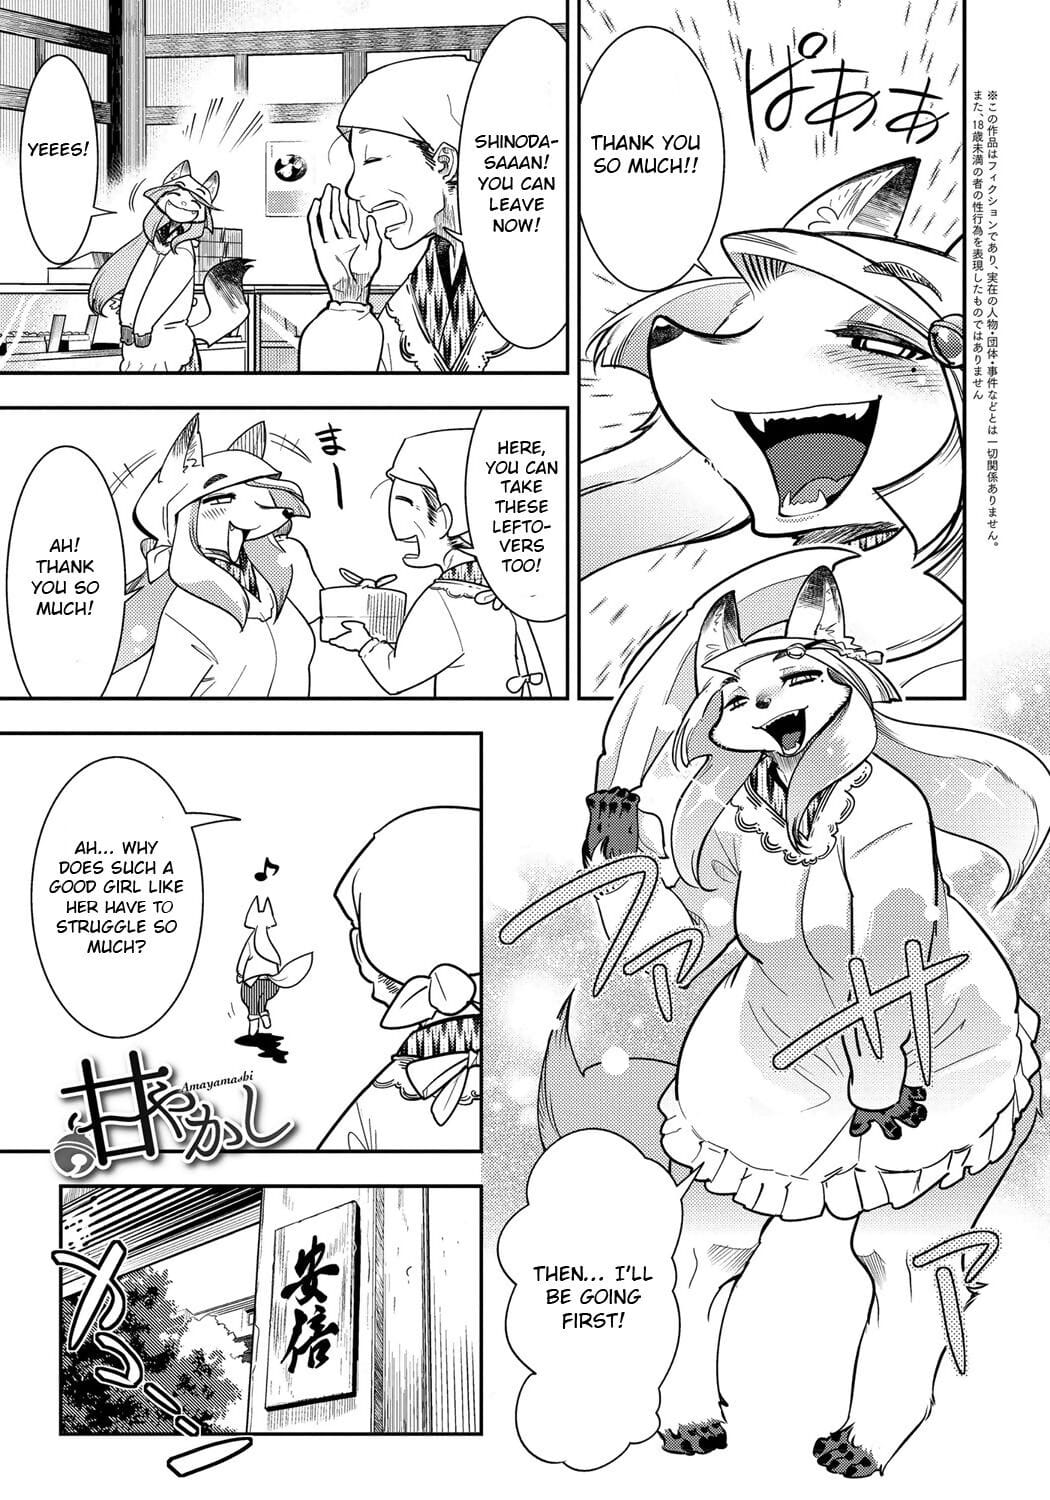 Amayakashi page 1